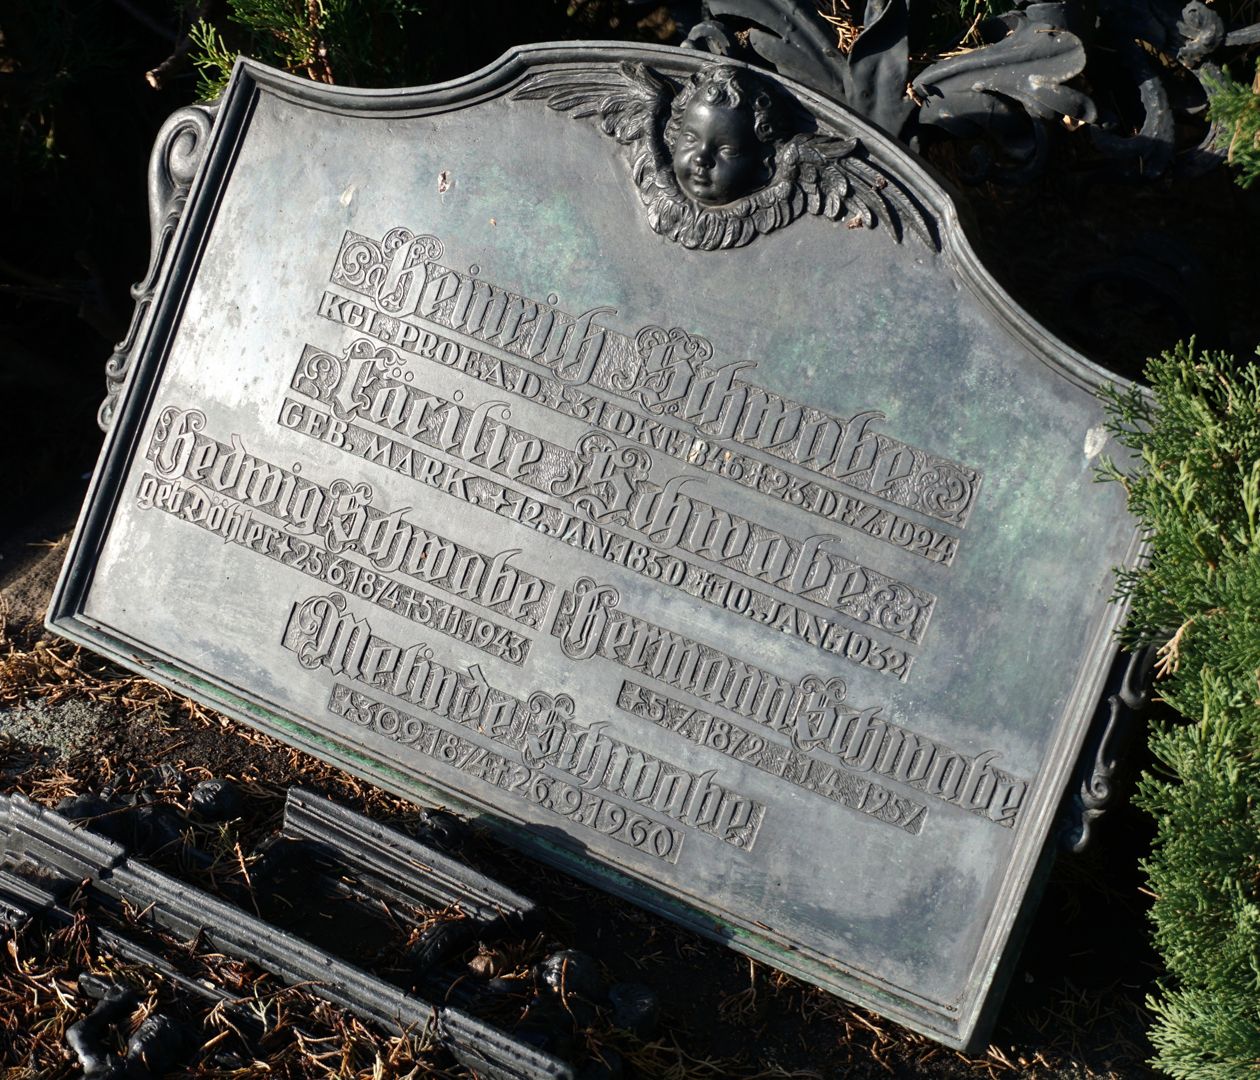 Johannisfriedhof grave site 778 Inscription plaque of the Schwabe family